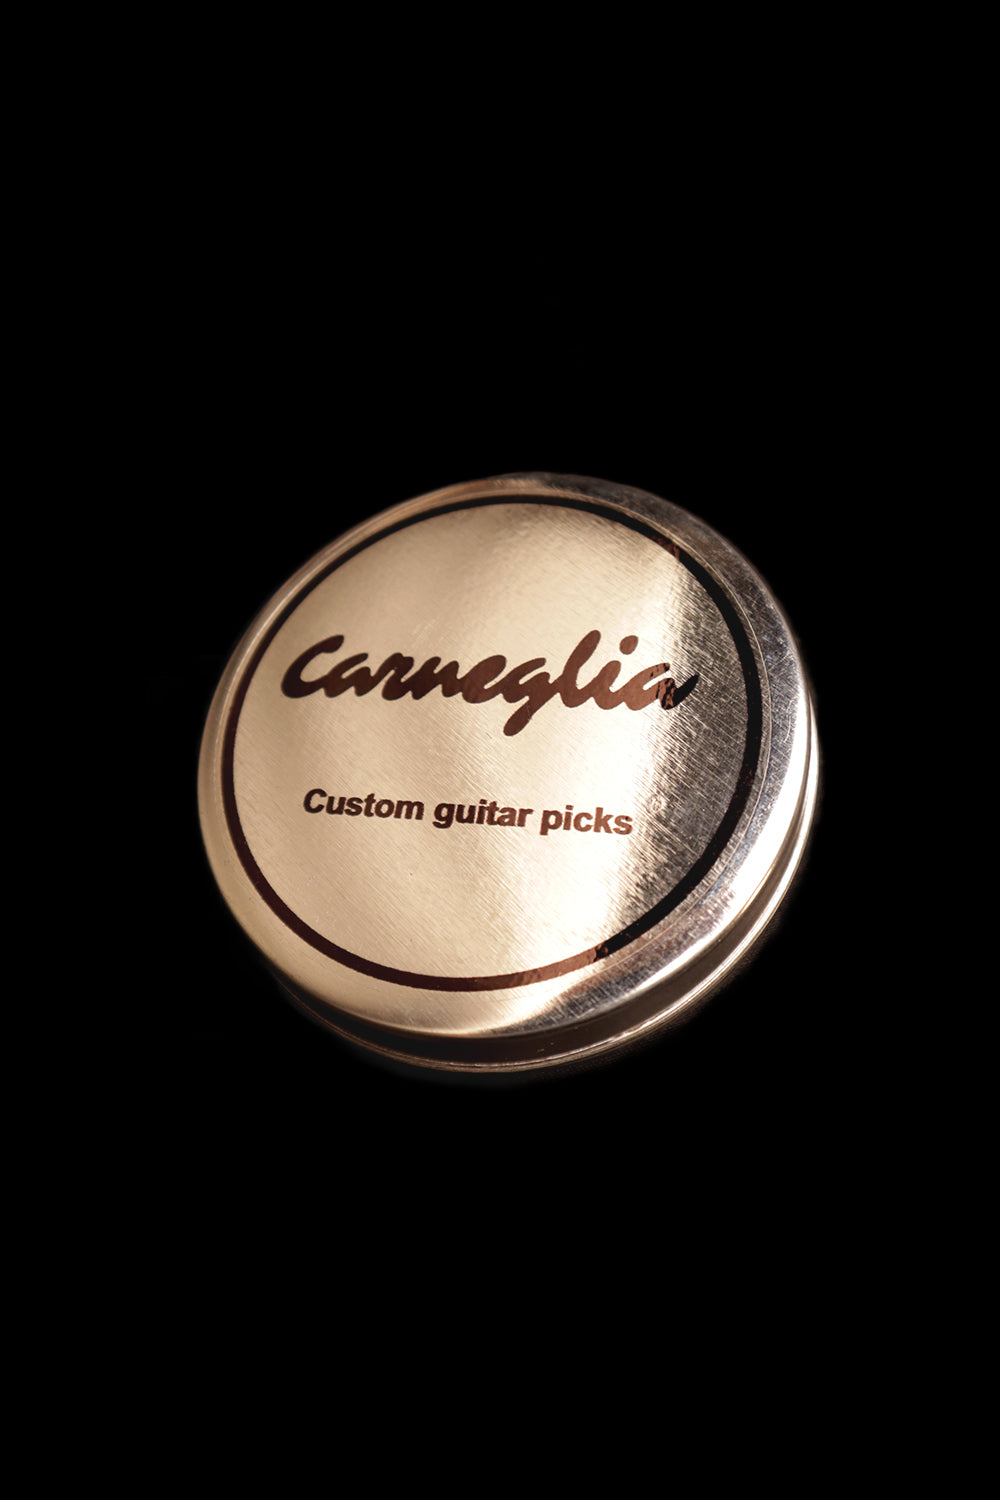 Carneglia Guitar Pick Tin